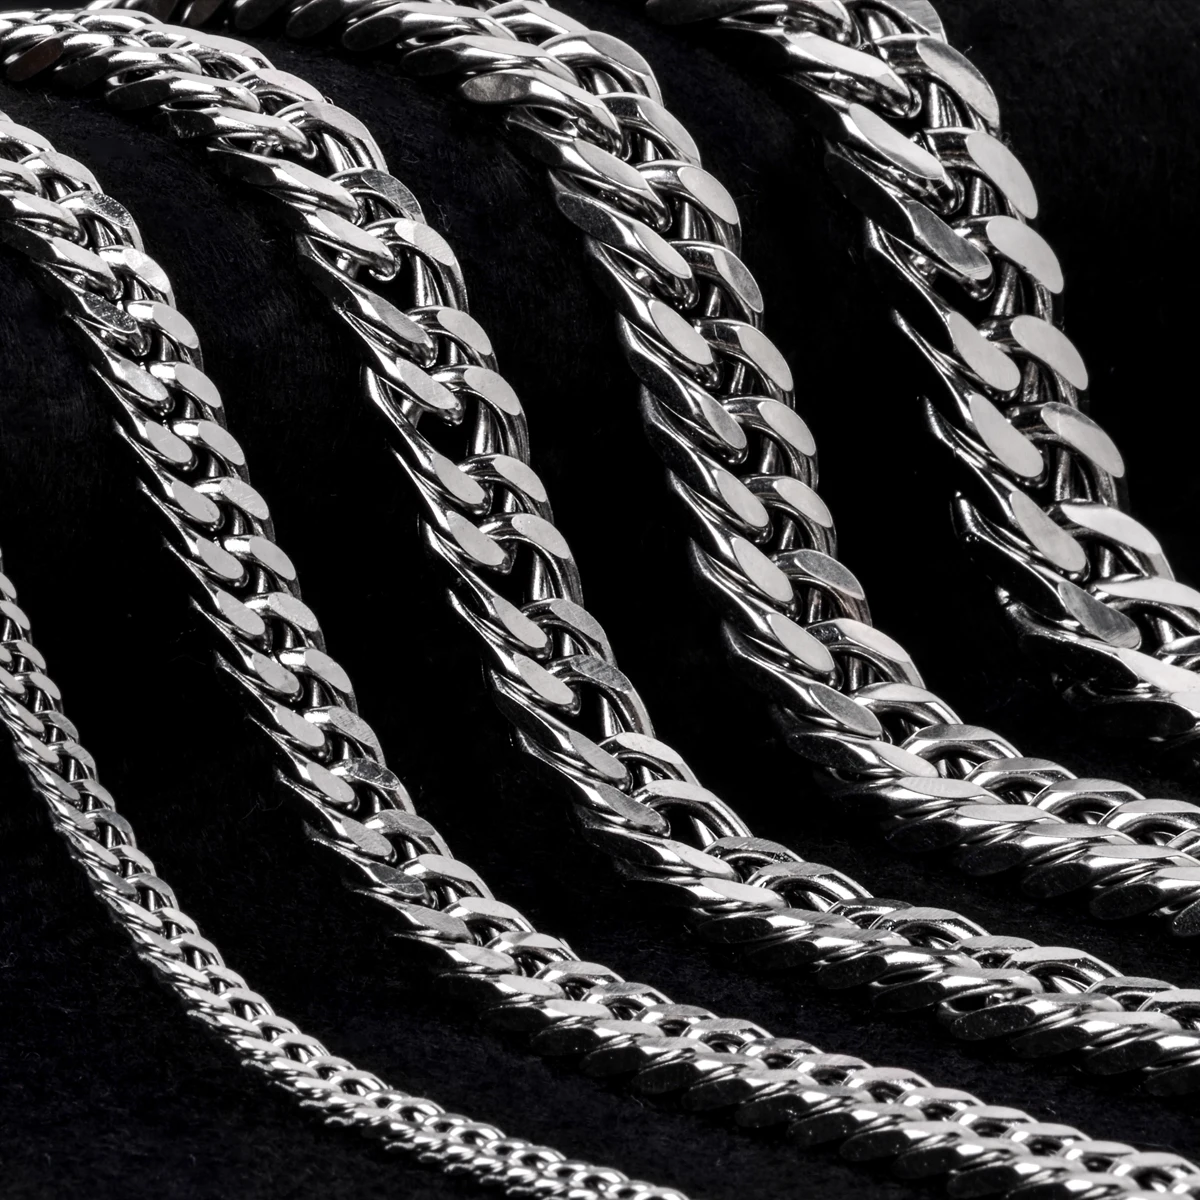 3 мм/4 мм/6 мм/8 мм/10 мм/12 мм ширина браслет из нержавеющей стали для мужчин серебряный цвет браслеты и браслеты Винтаж хип-хоп ювелирные изделия